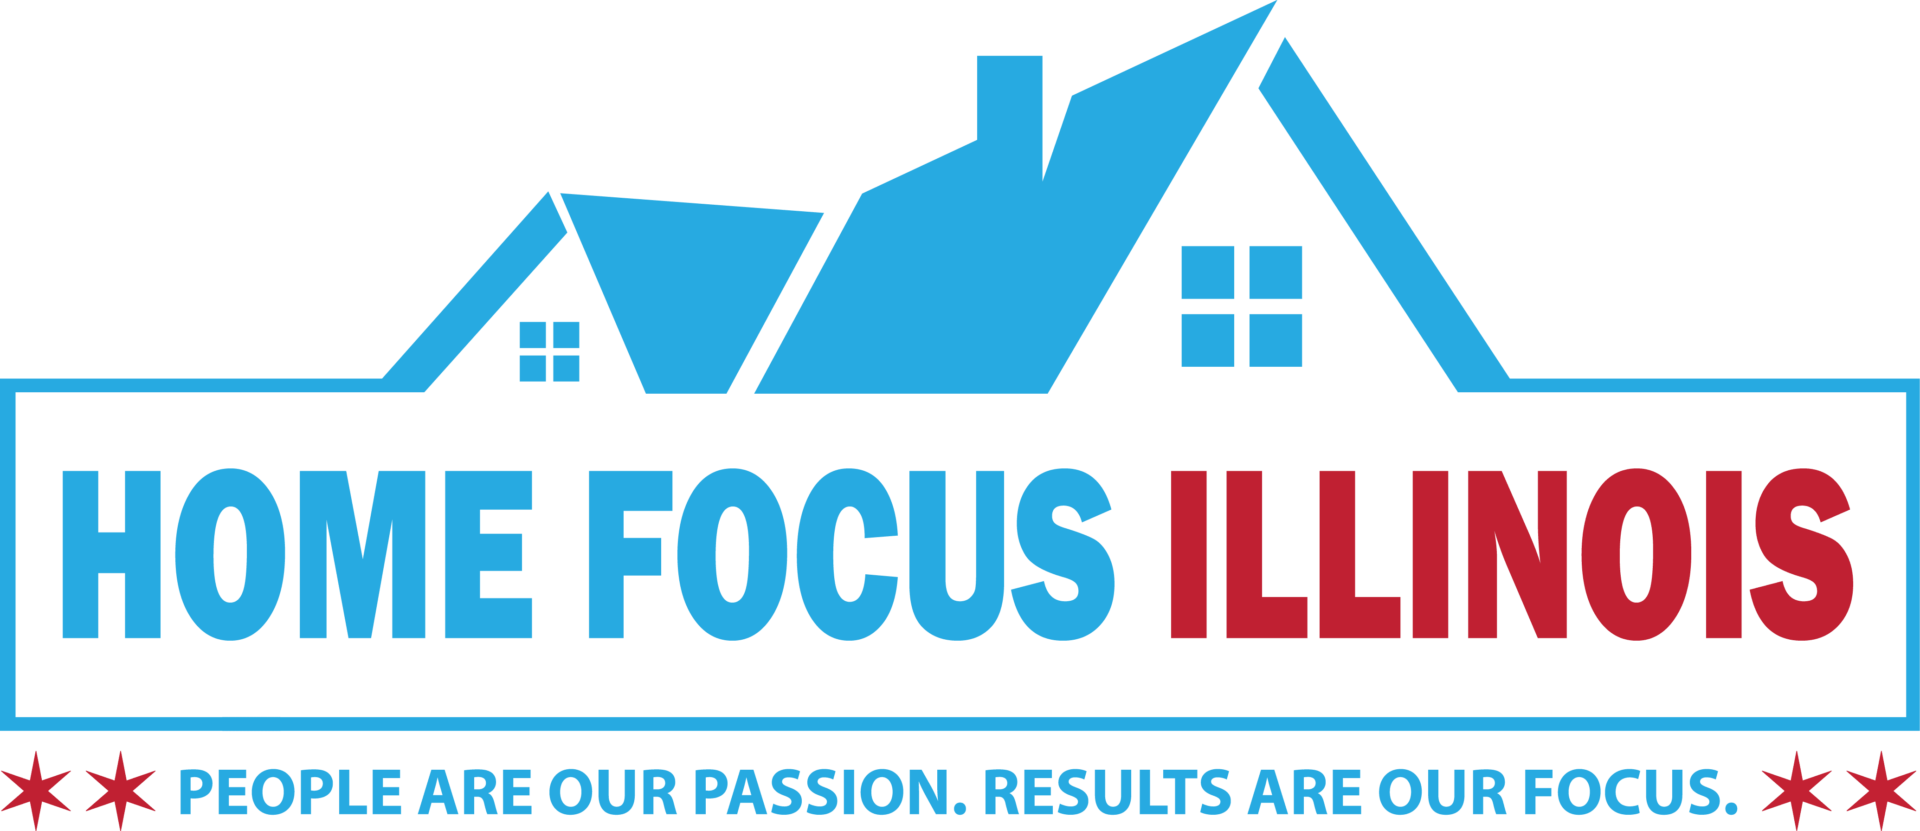 Home Focus Illinois logo